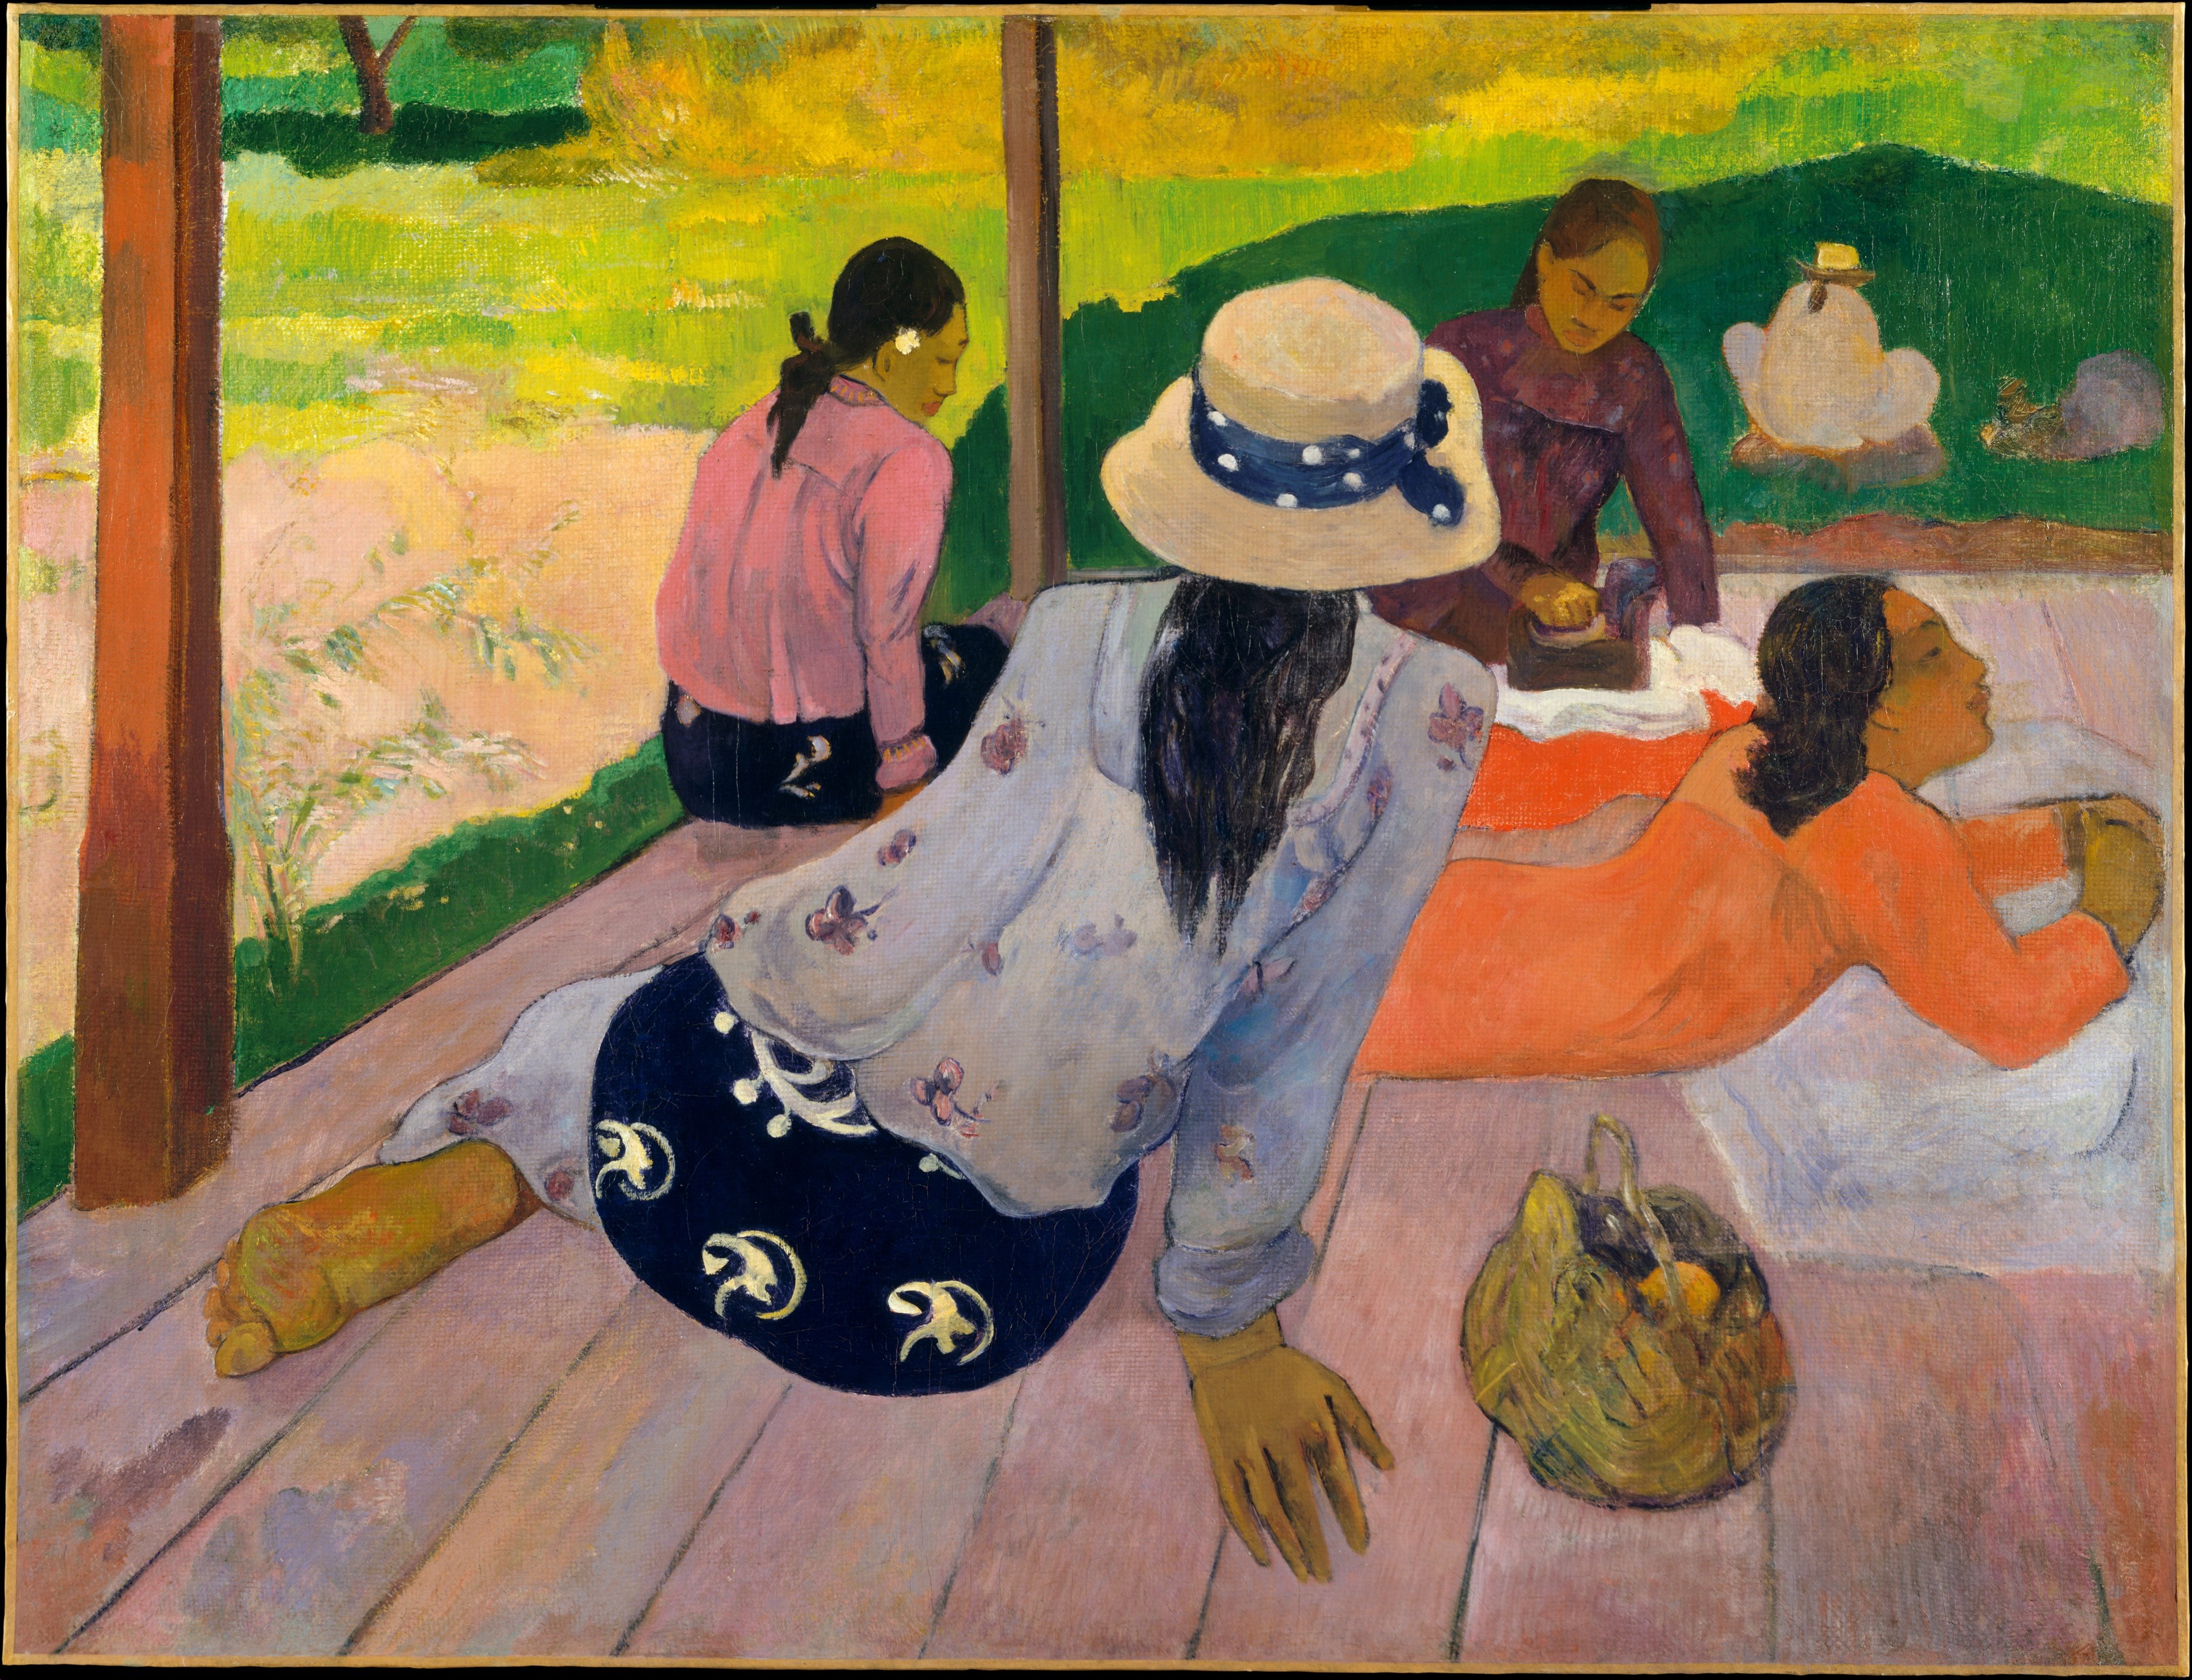 Сиеста by Paul Gauguin - ок. 1892–94 - 88.9 x 116.2 см 